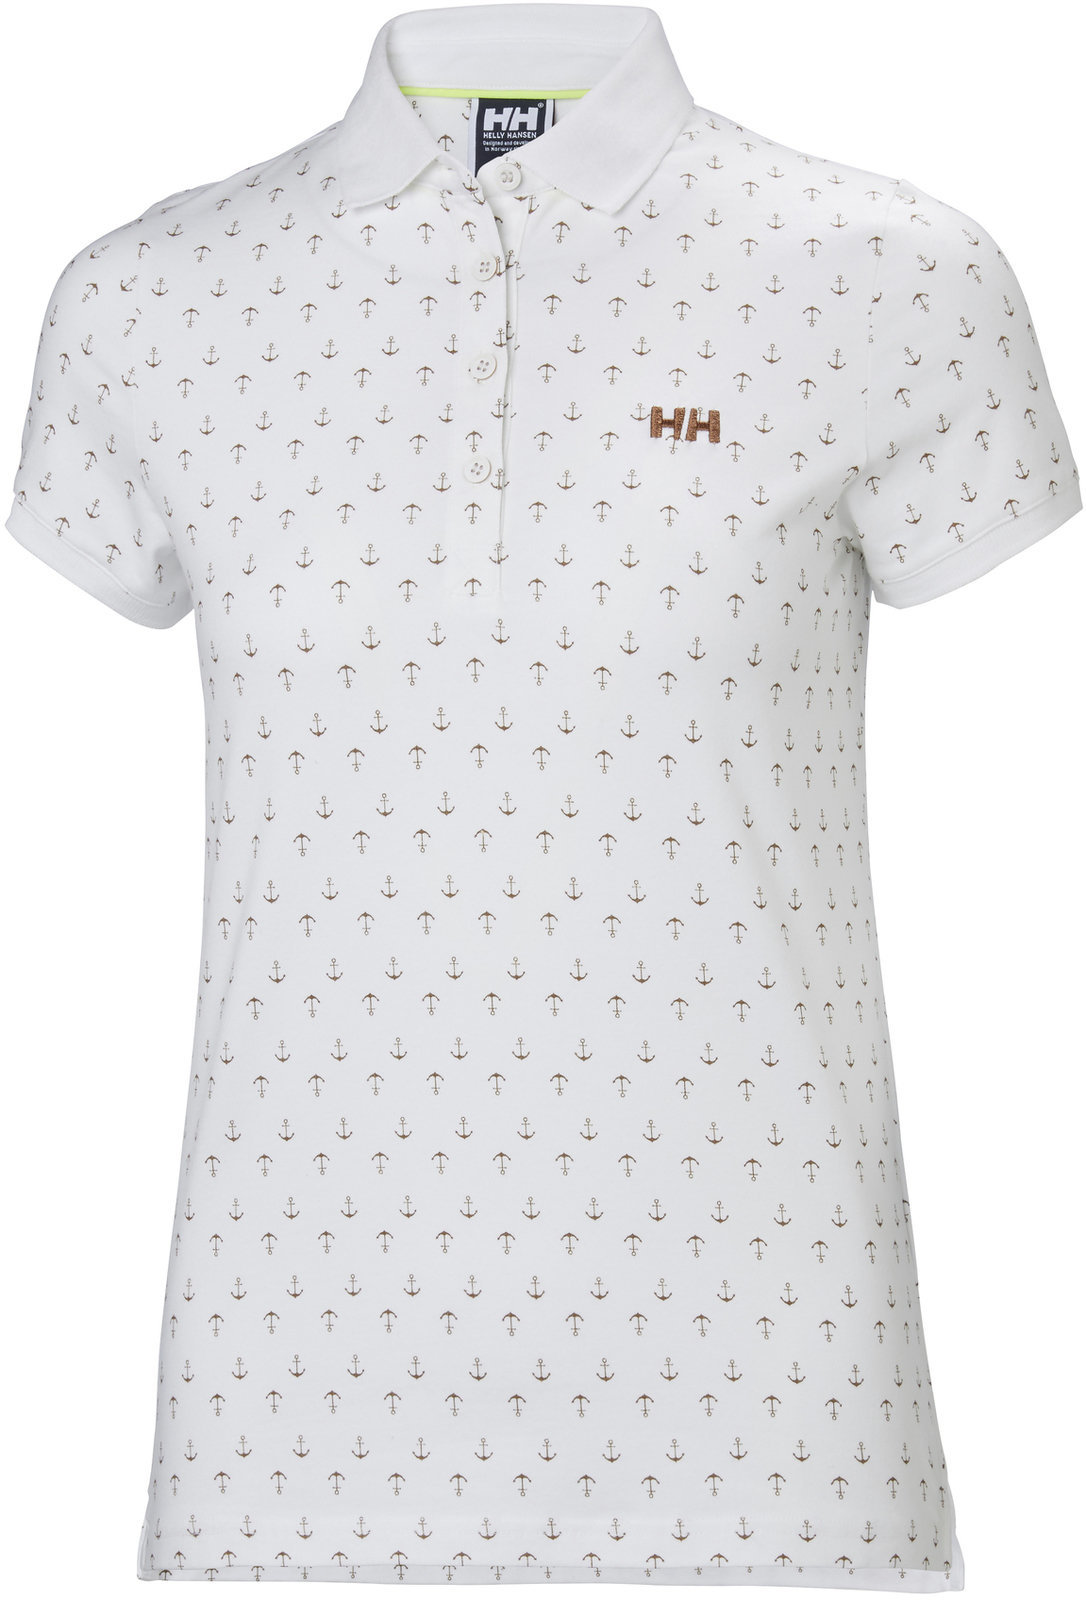 T-Shirt Helly Hansen W Naiad Breeze Polo White Anchor - XL